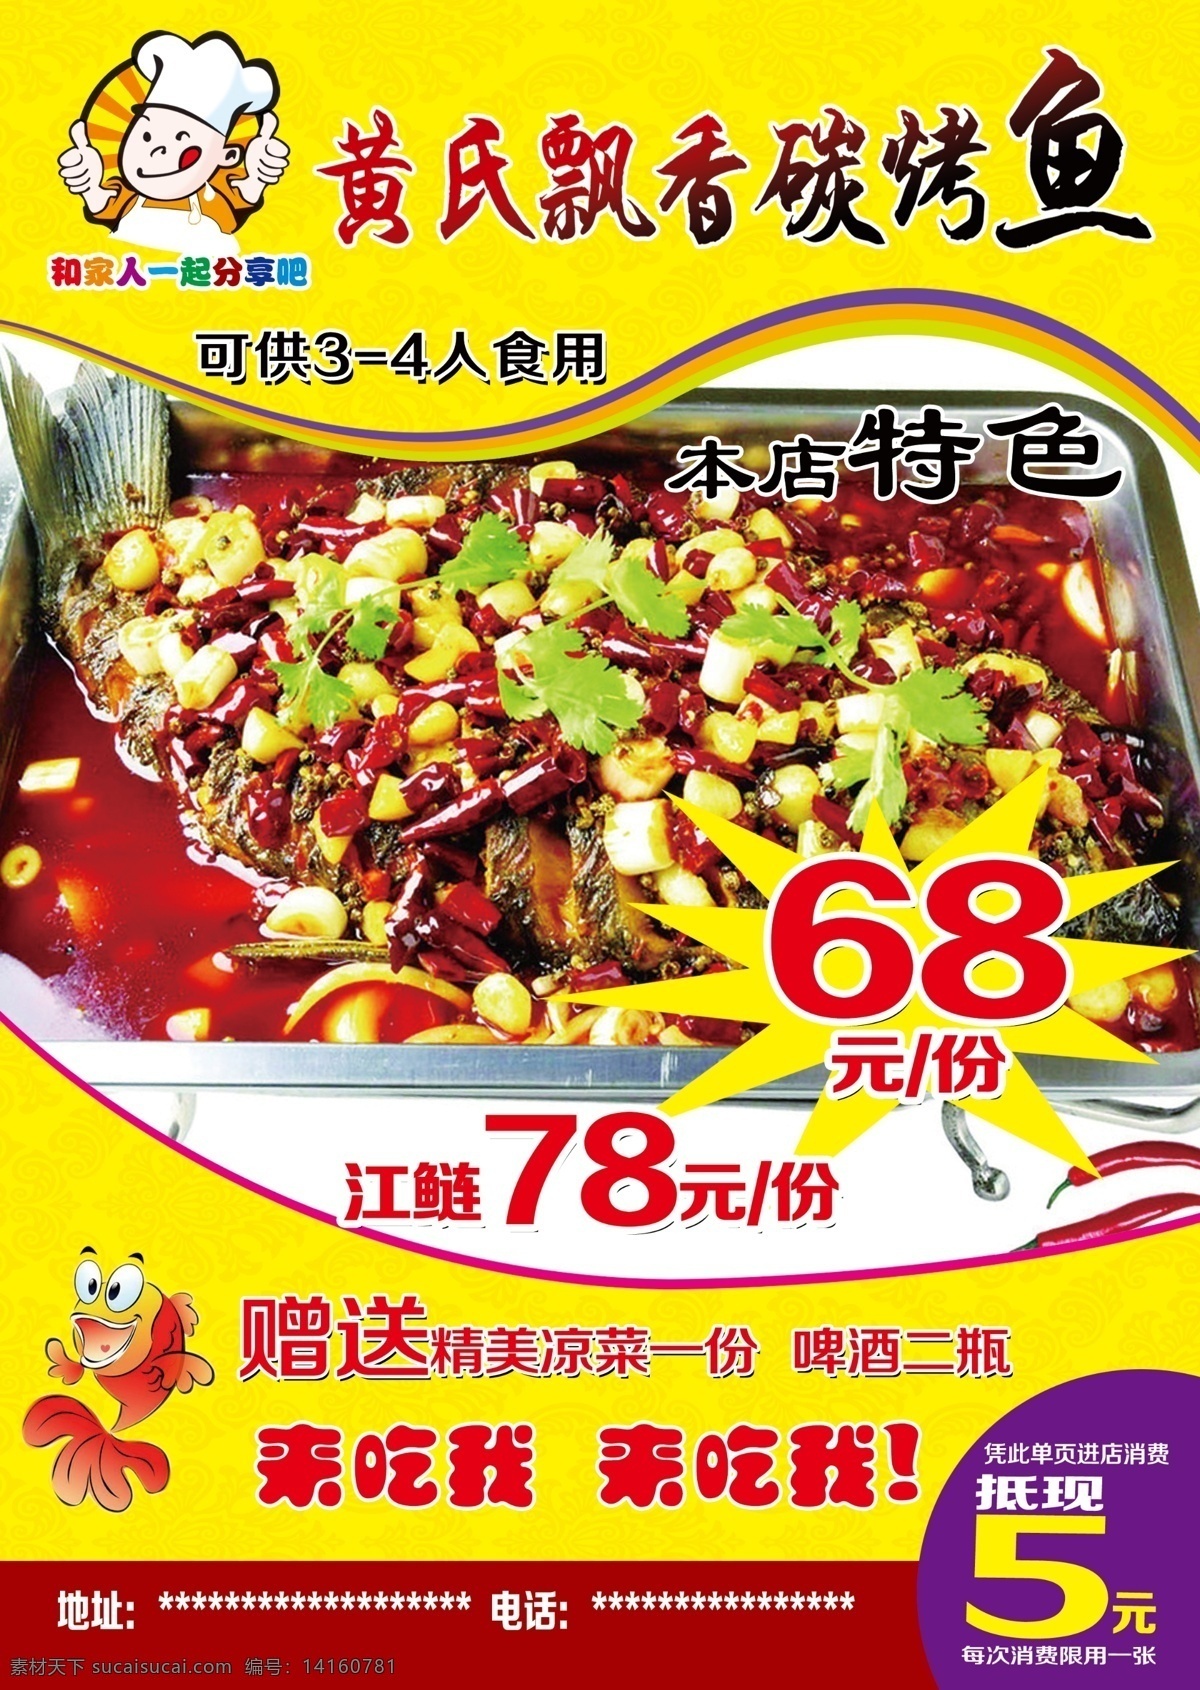 烤鱼 重庆烤鱼 宣传单 传单 美食 餐馆 菜单 黄色